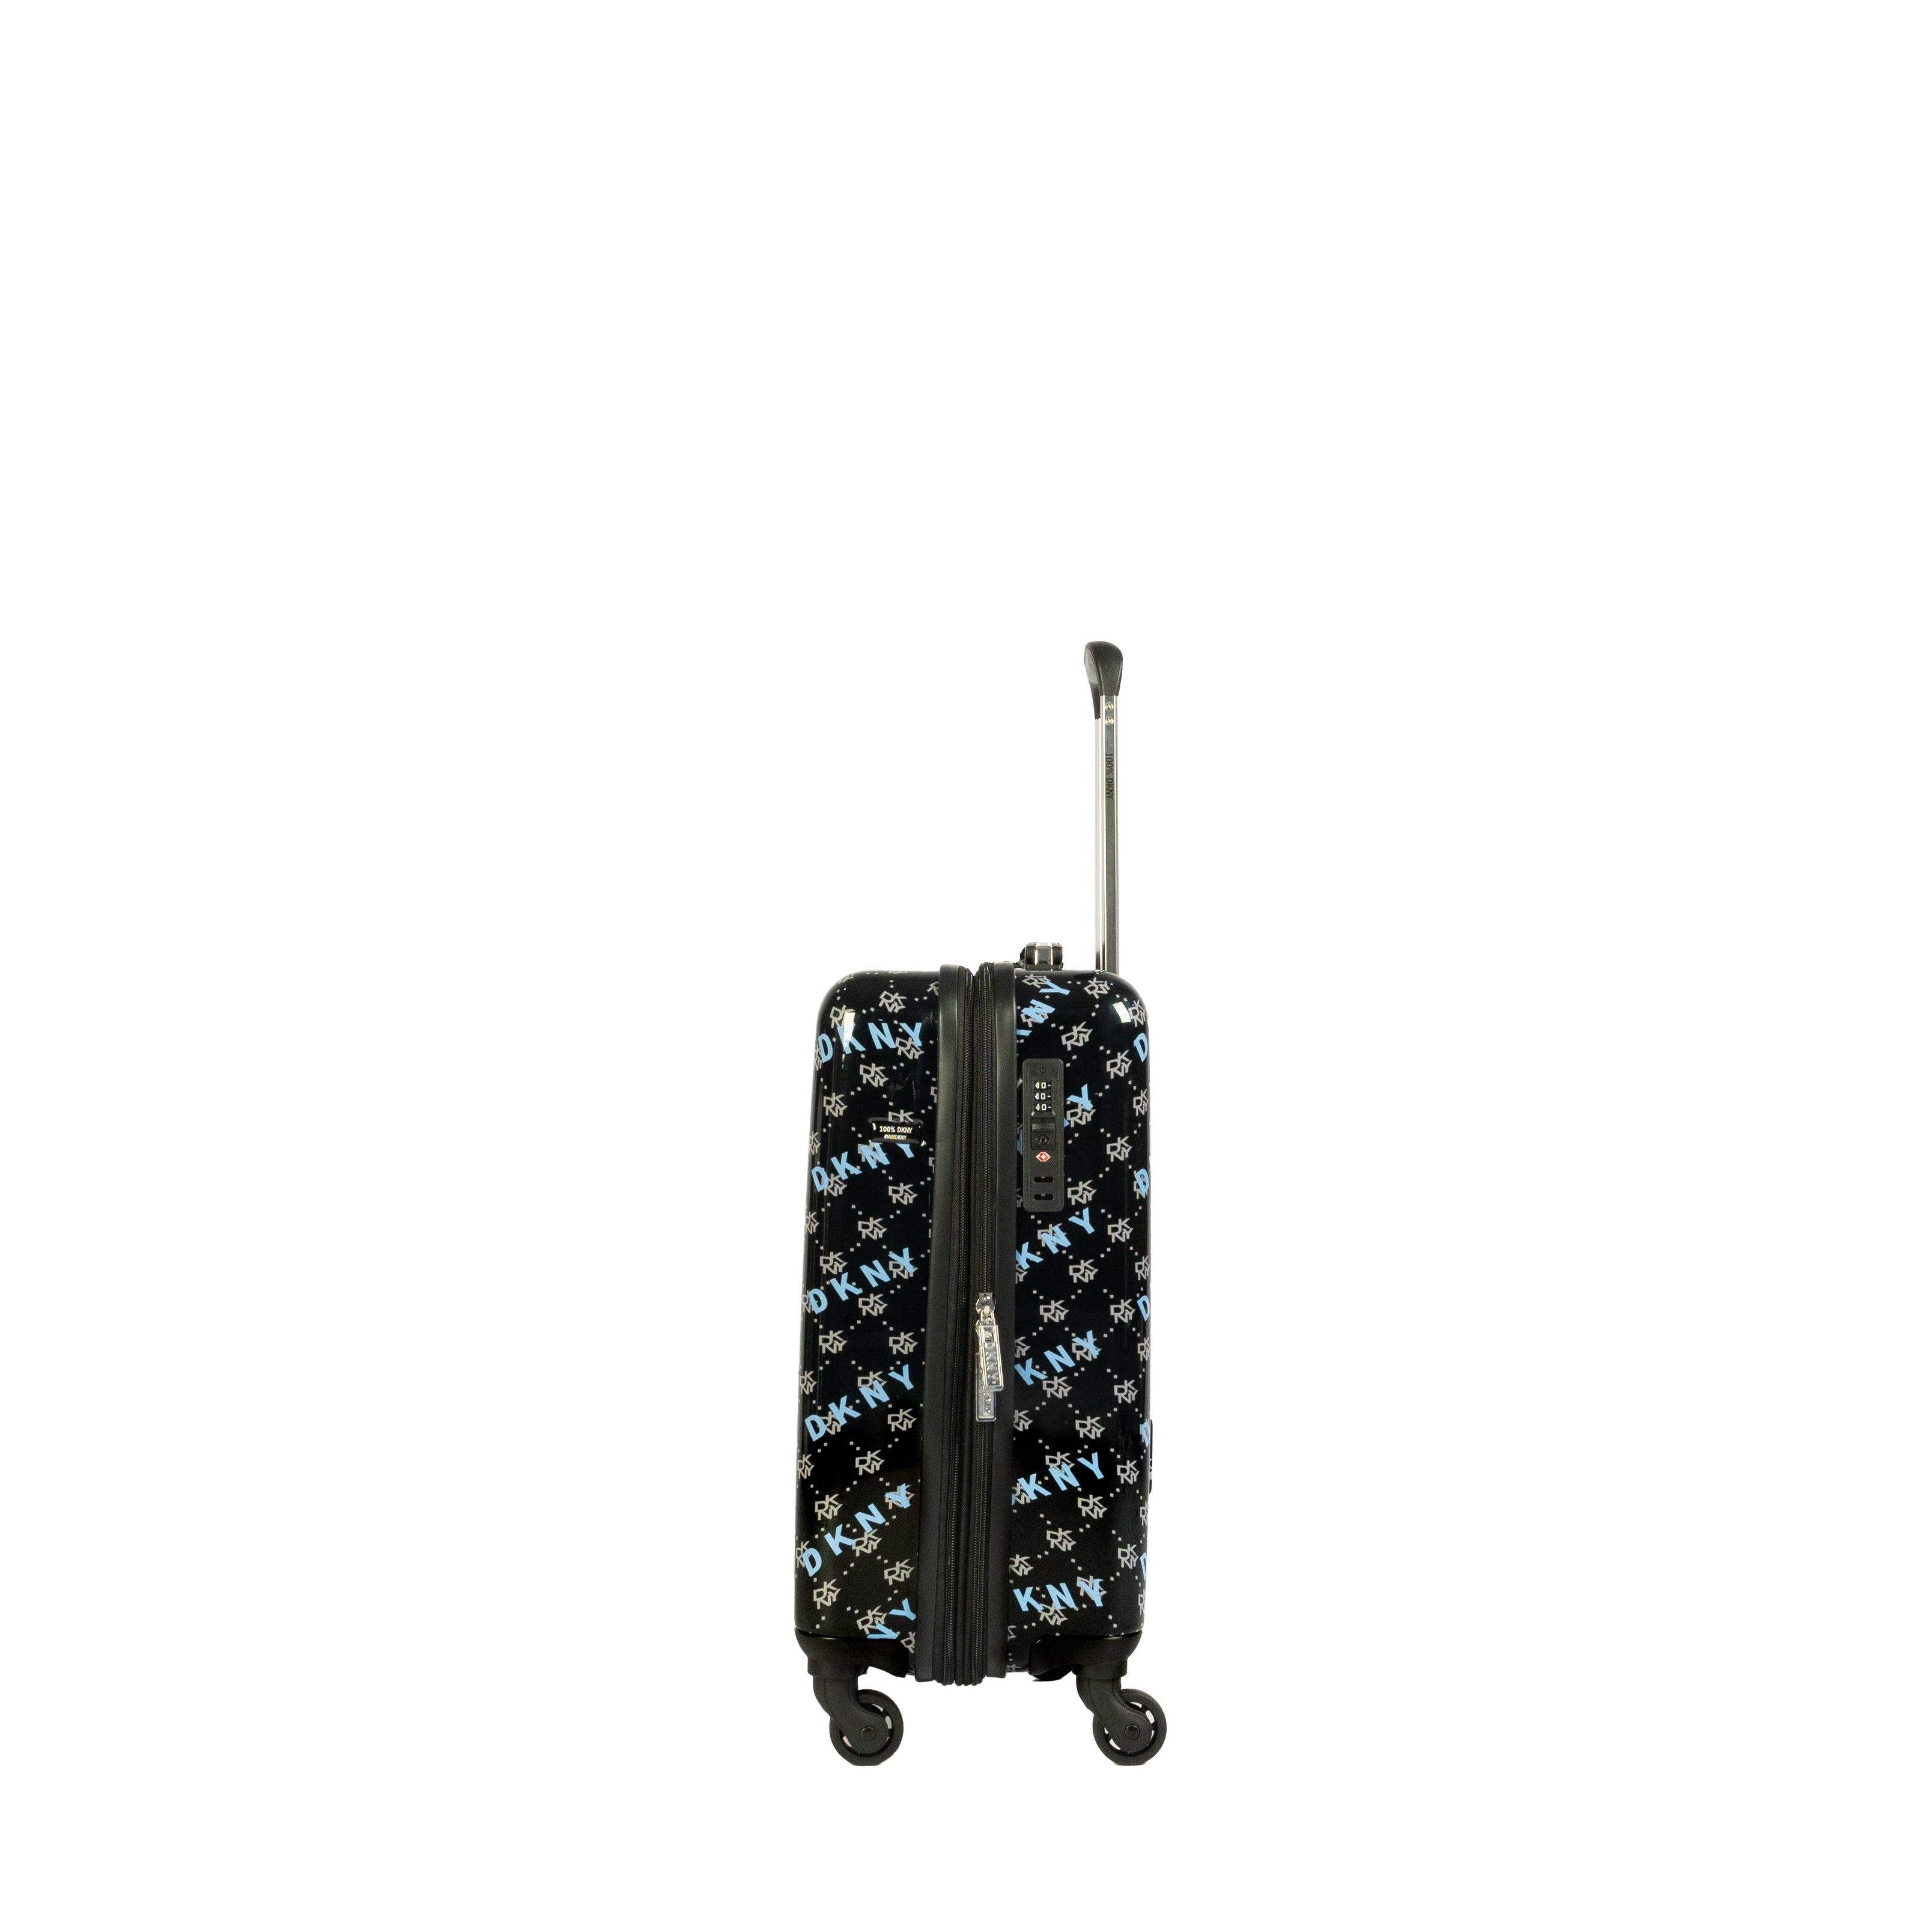 DKNY Black Cabin Luggage